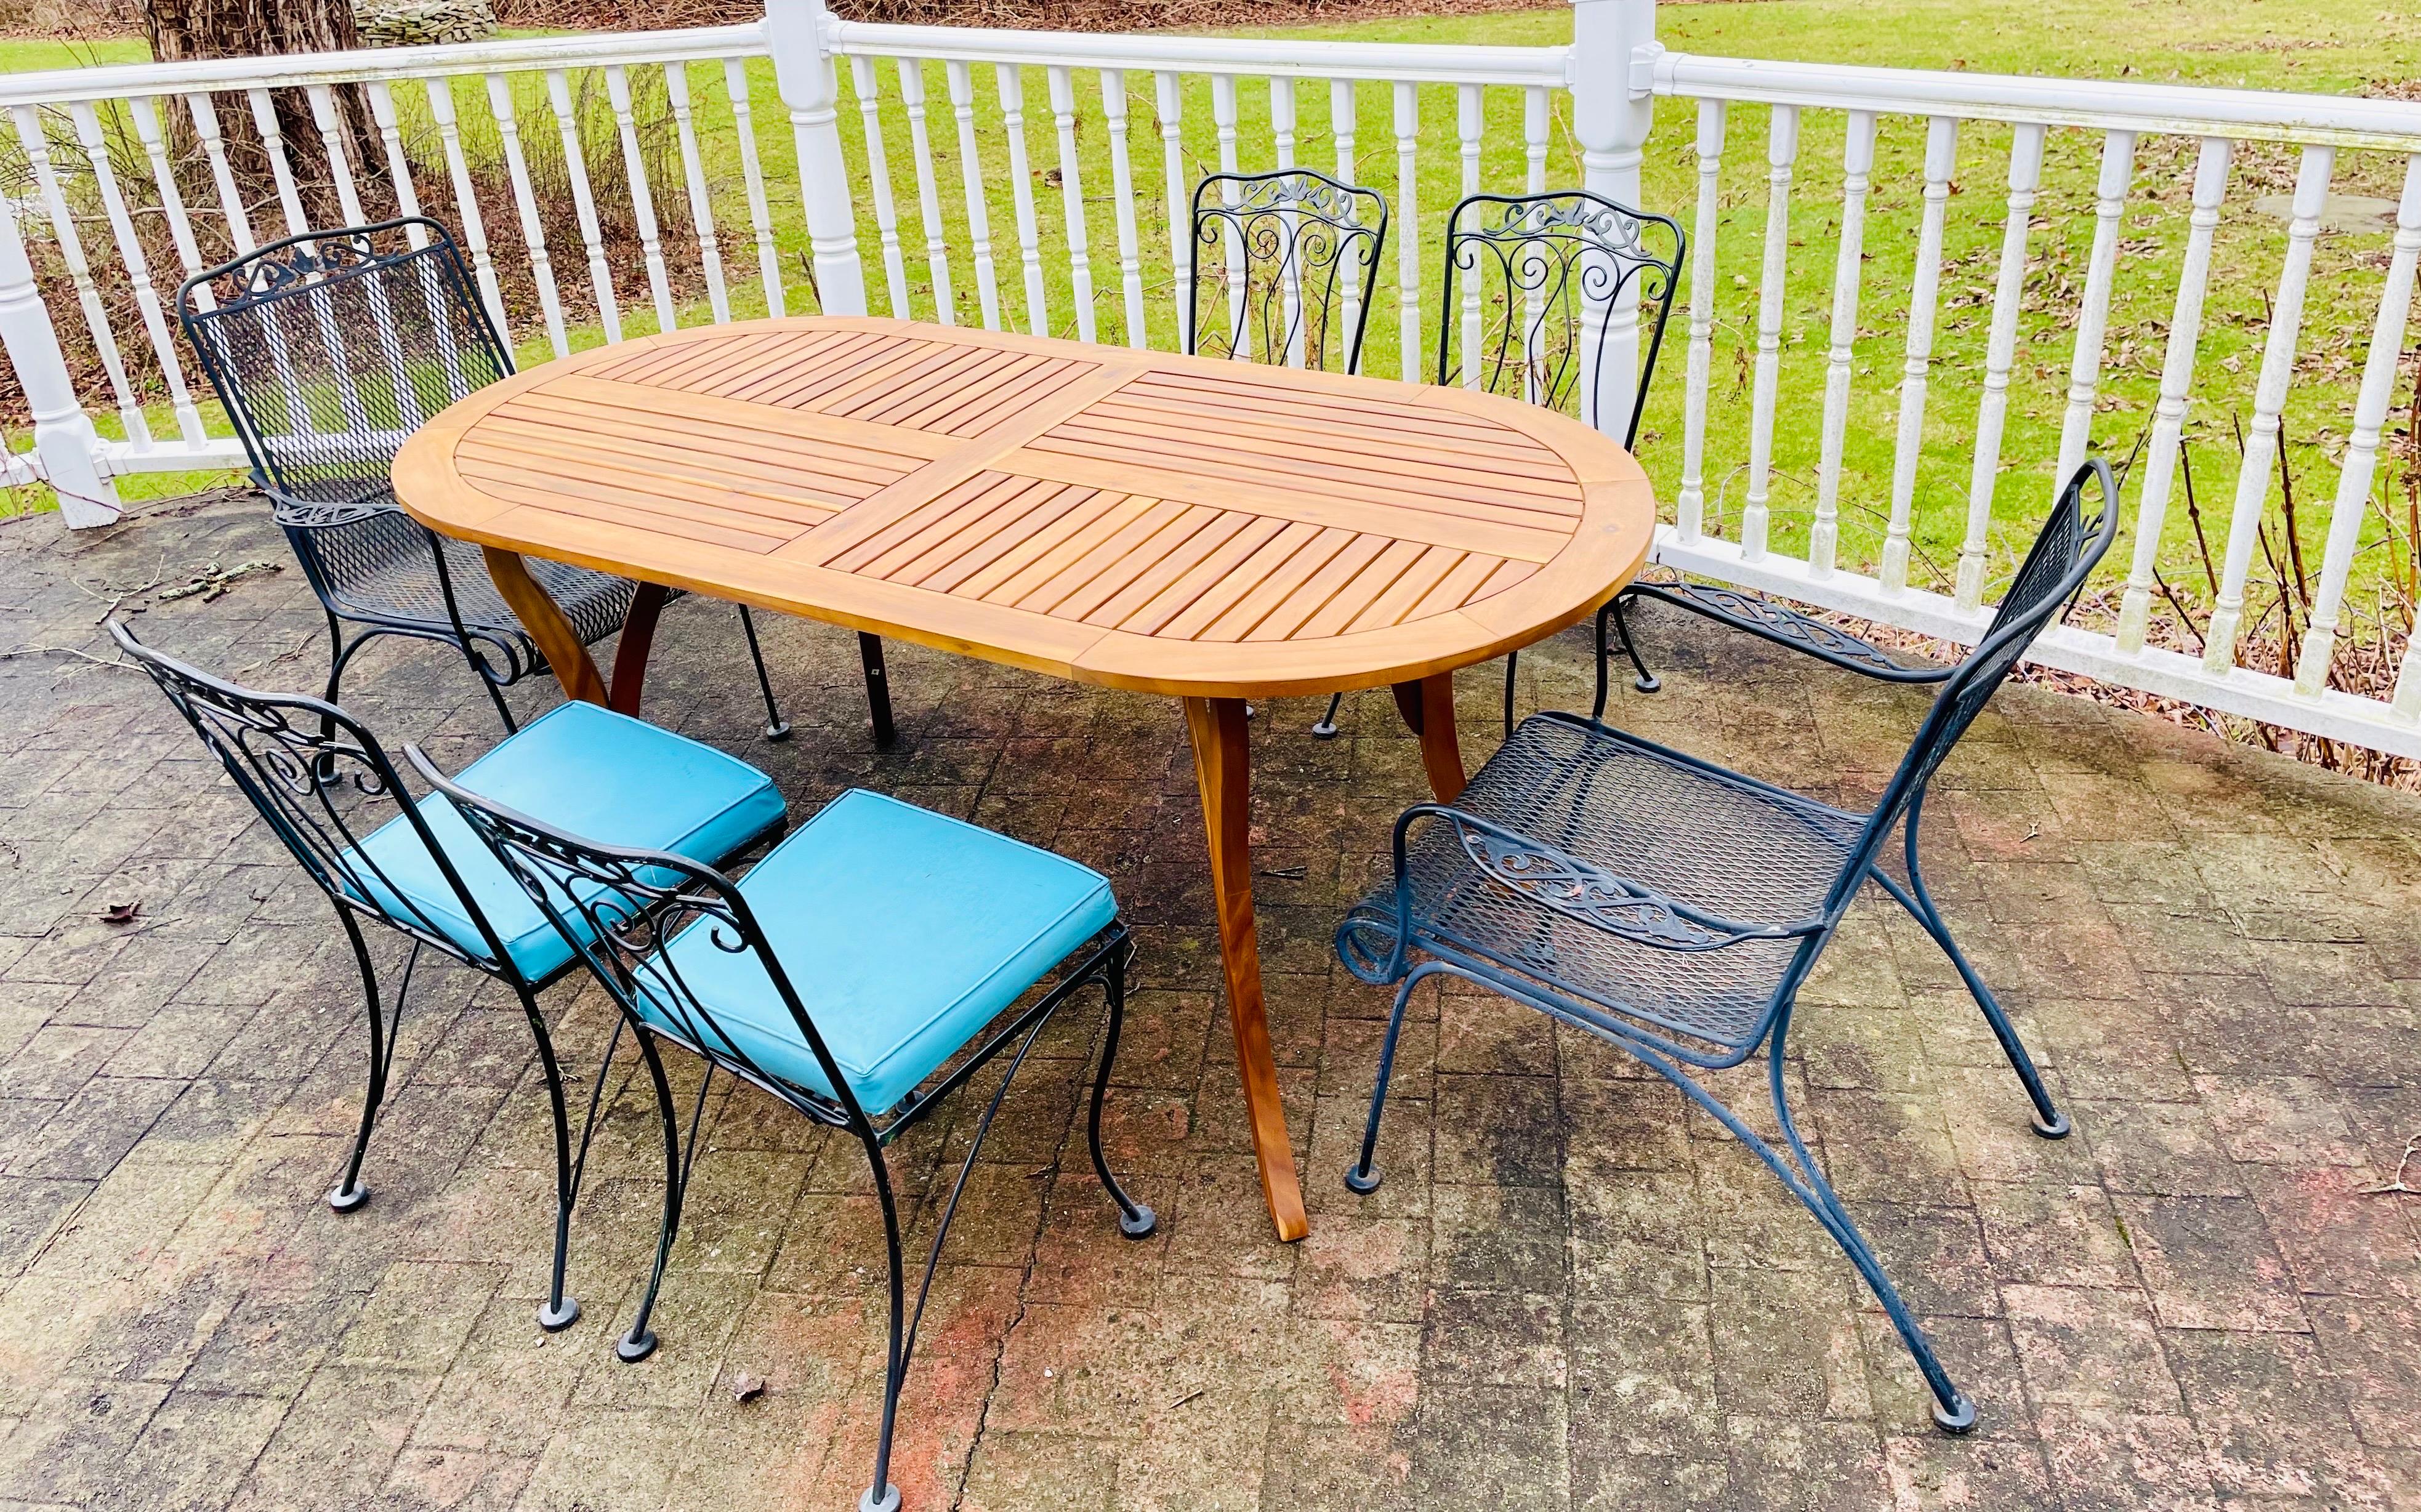 Vieux meubles de patio en fer forgé chaises assises avec table en teck

Quel que soit votre style - moderne du milieu du siècle, rustique, traditionnel ou fermier - vous pouvez créer ce look élégant et tendance en mélangeant le bois et le métal.